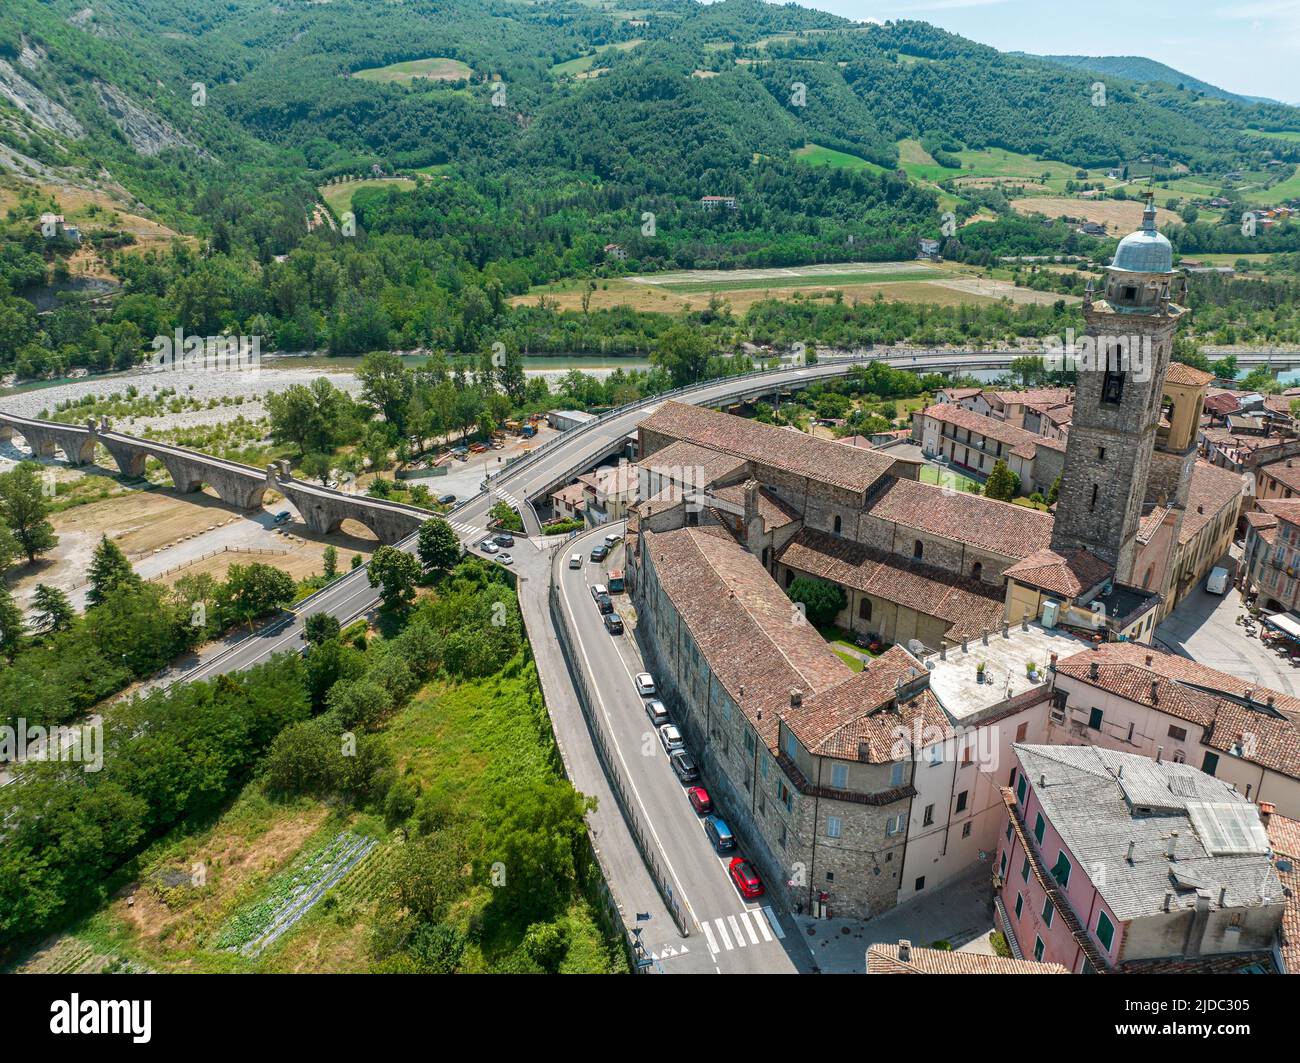 Vista aérea de Bobbio, una ciudad en el río Trebbia. Puente. Piacenza, Emilia-Romaña. Detalles del complejo urbano, techos y campanarios. Italia Foto de stock